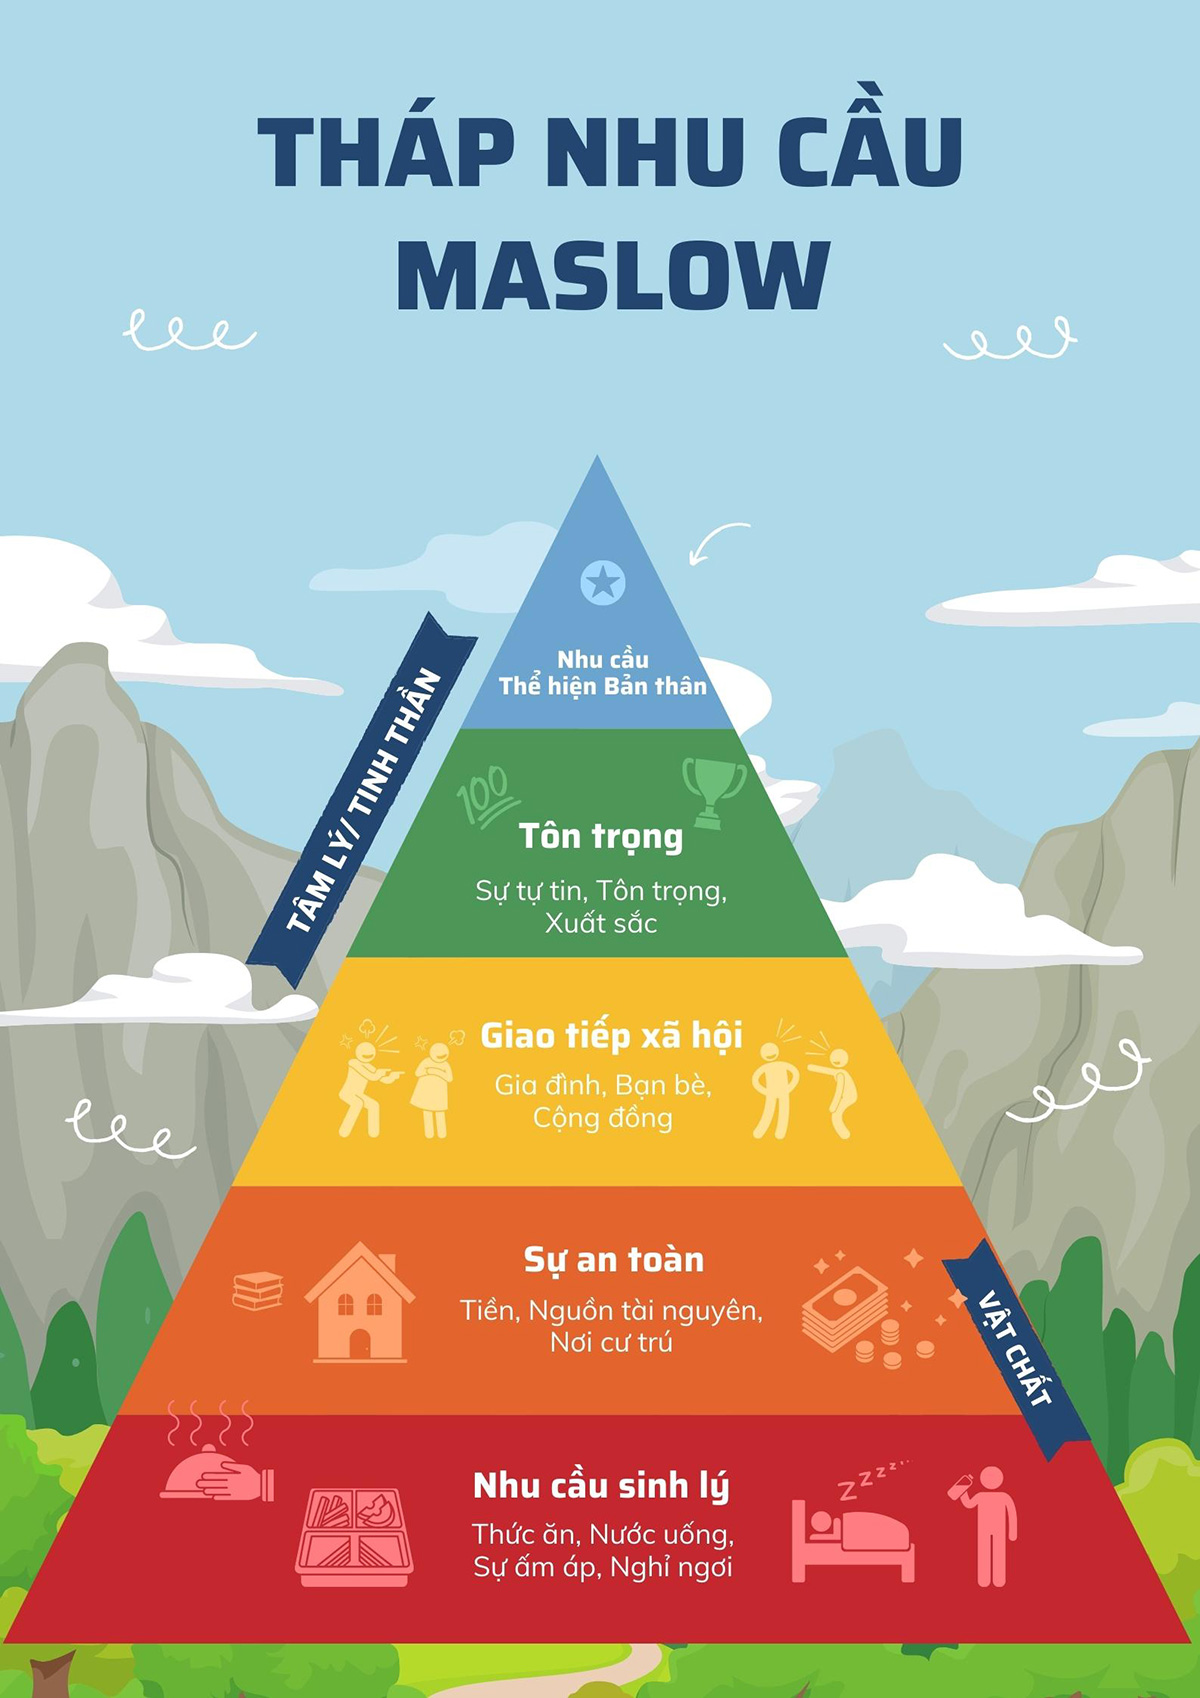 Tháp nhu cầu Maslow và ứng dụng trong quản trị nhân sự